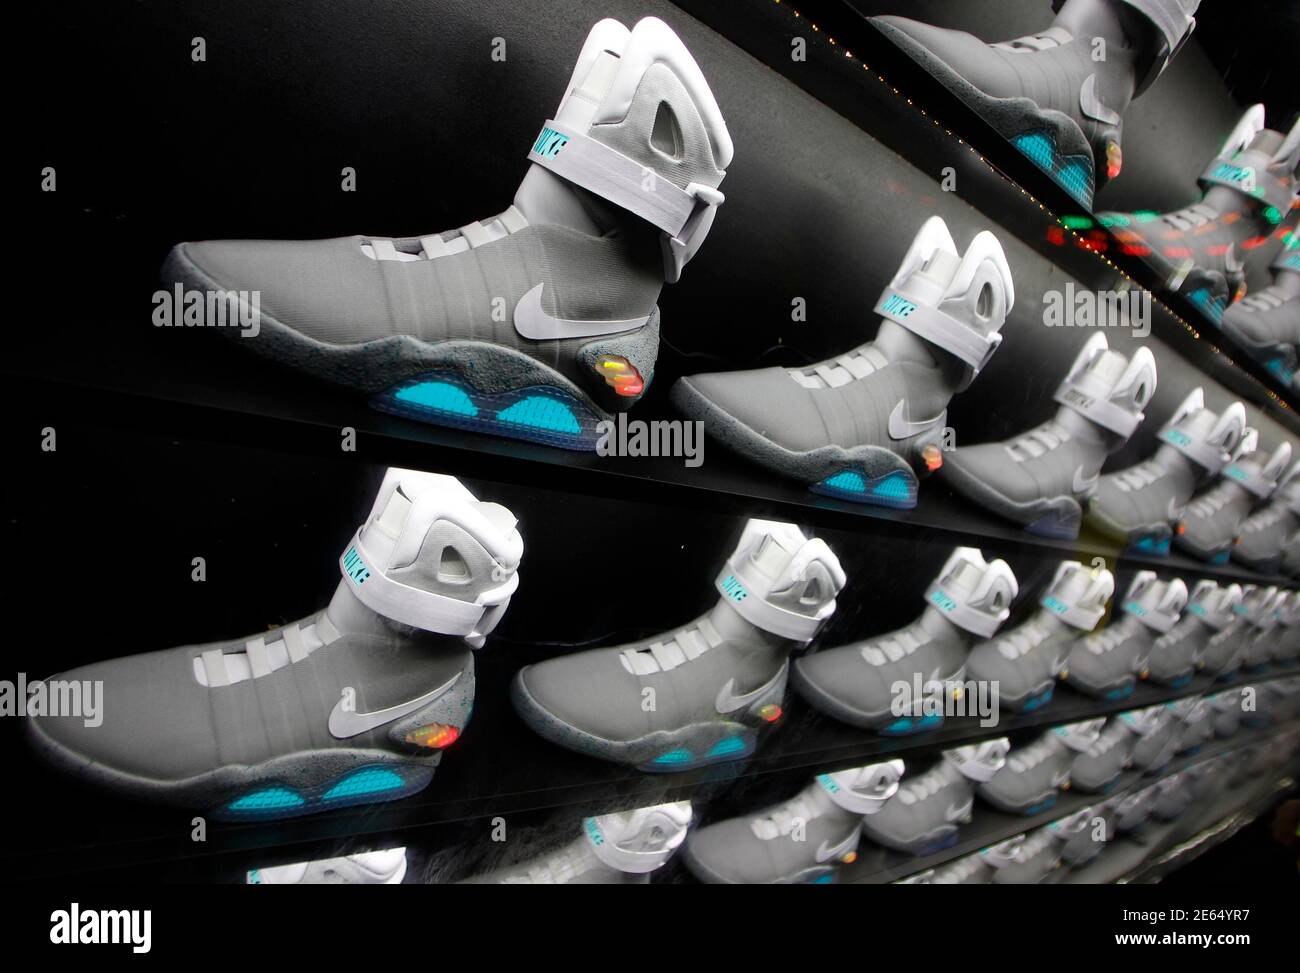 2011 chaussures NIKE MAG, basées sur le modèle original NIKE MAG porté en  2015 par le personnage « Back to the future » Marty McFly, joué par Michael  J. Fox, sont exposées